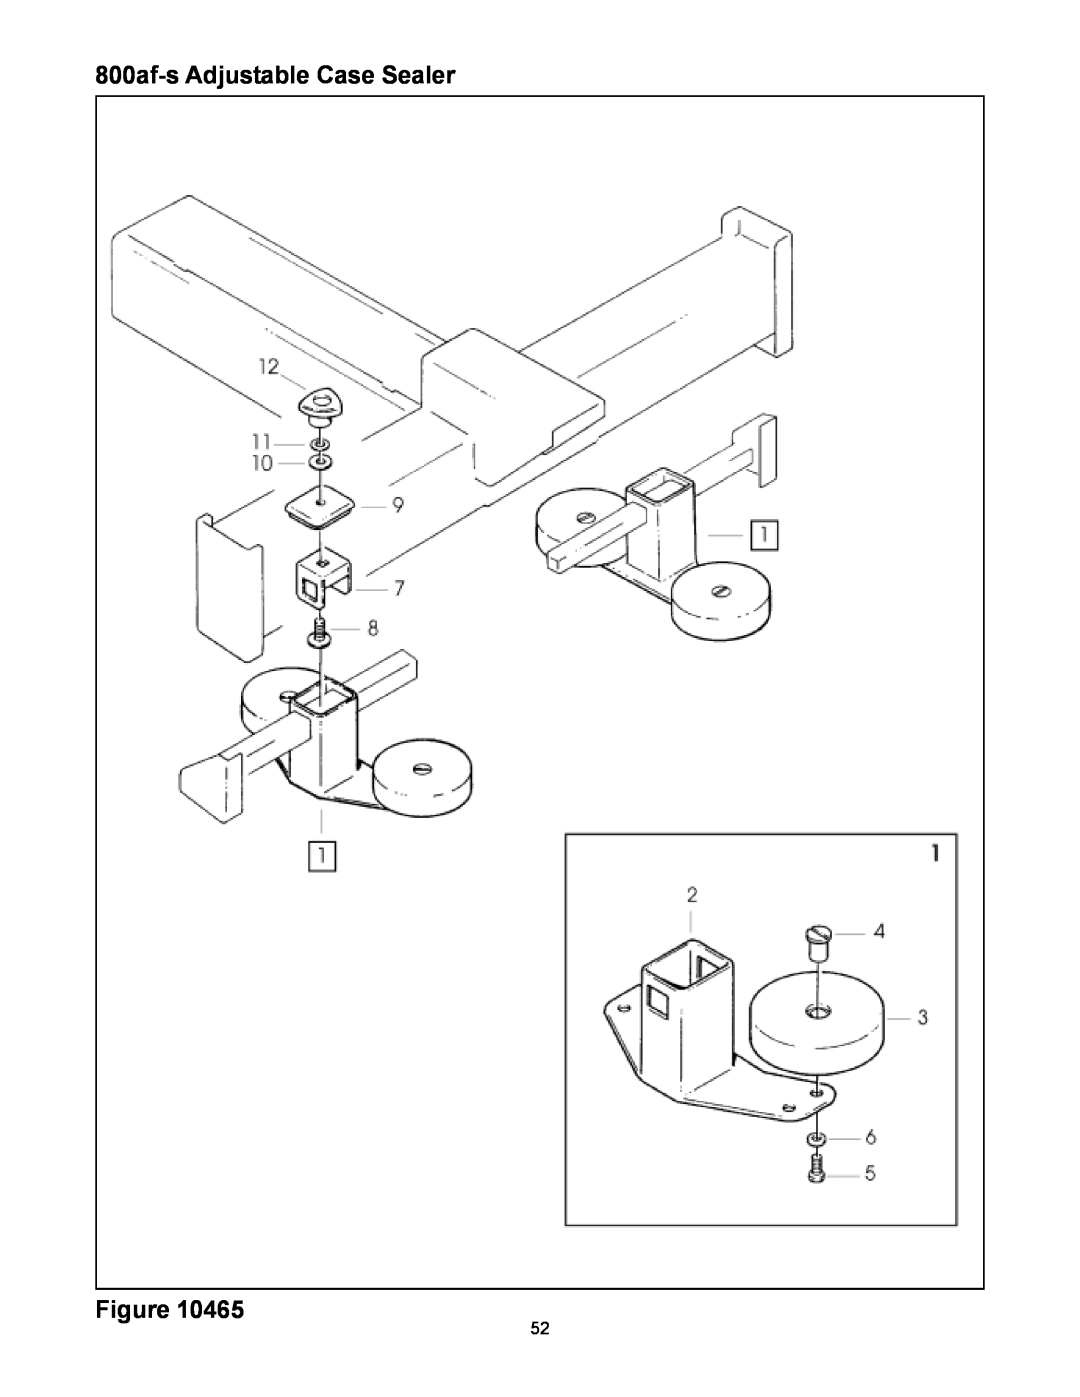 3M manual 800af-sAdjustable Case Sealer Figure 